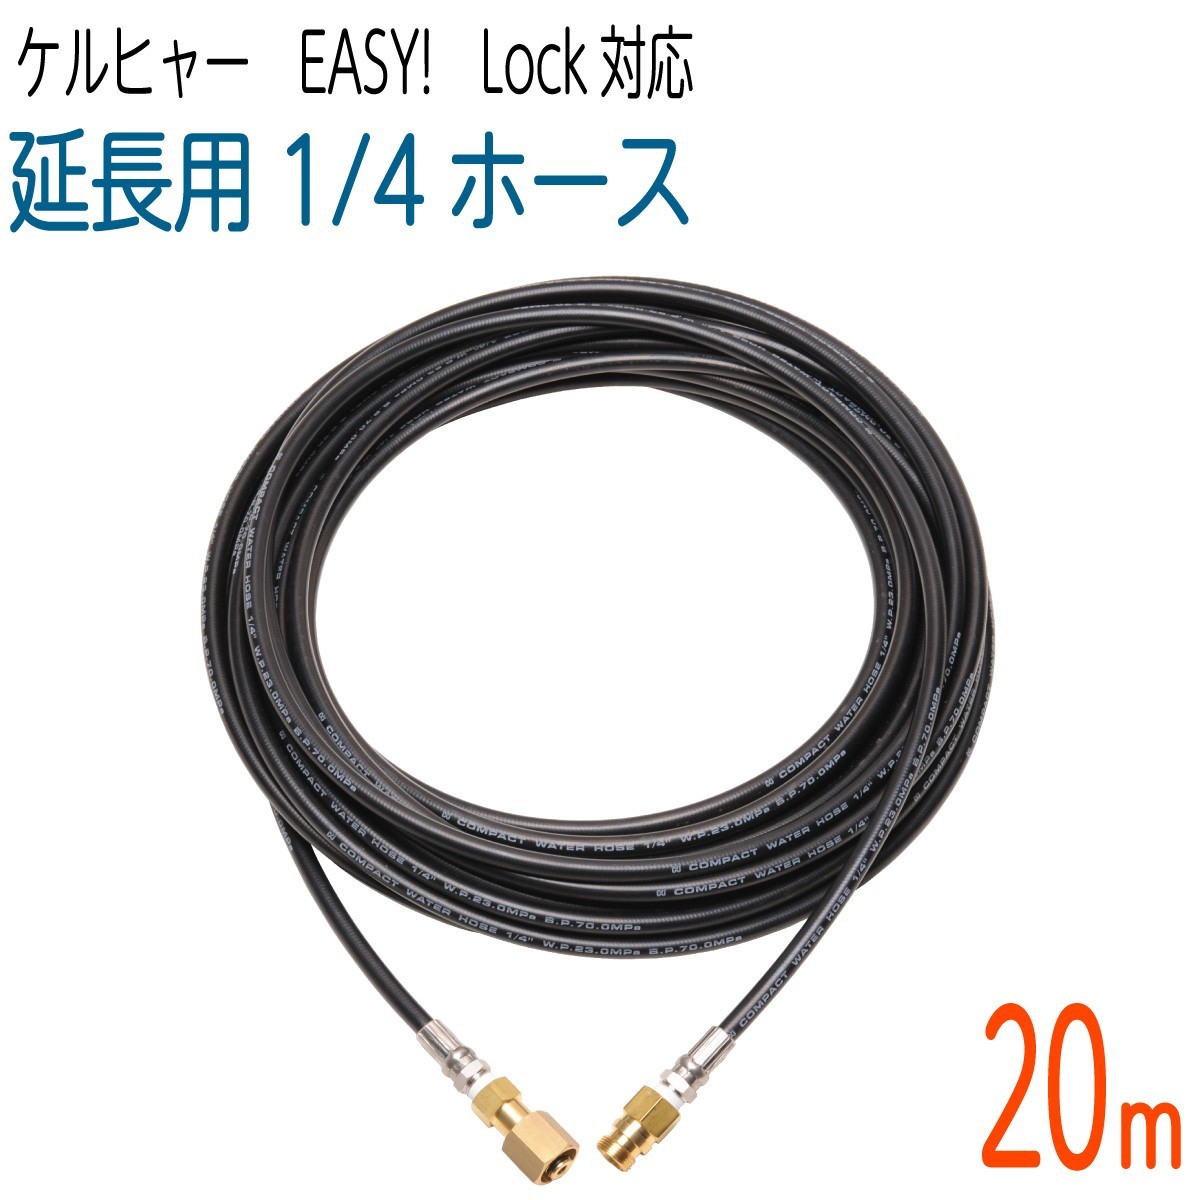 【20M】1/4サイズ ケルヒャー 新型HDシリーズ Easy!Lock 対応　コンパクトホース　延長高圧洗浄機ホース_画像1